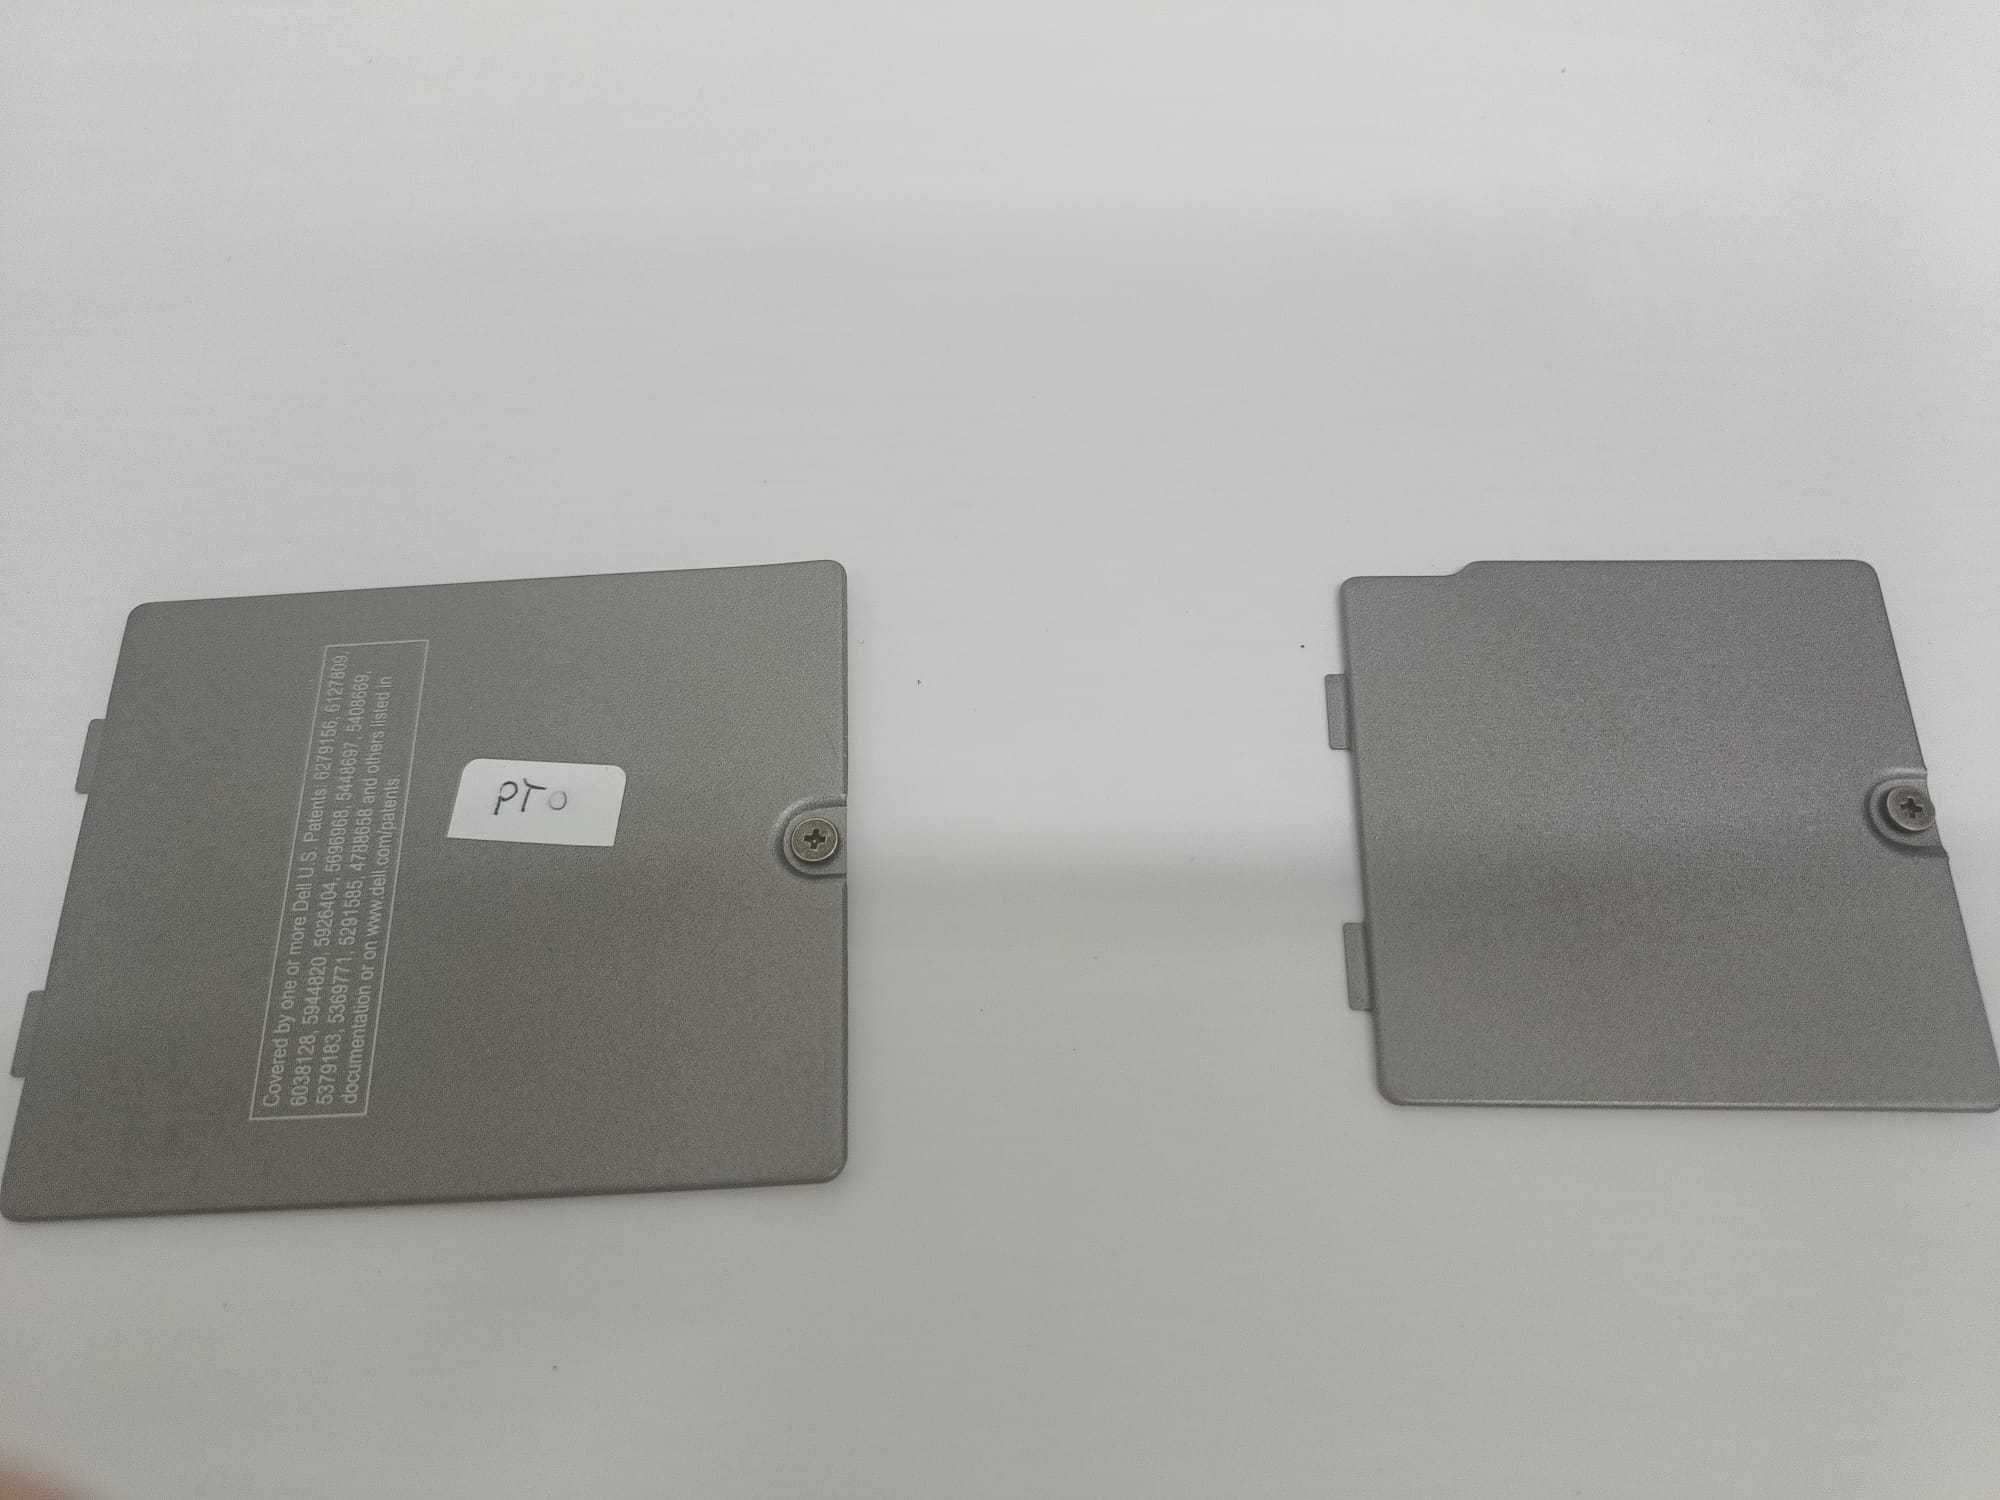 Zaślepki/klapki dolnej obudowy laptopa Dell Latitude D600.